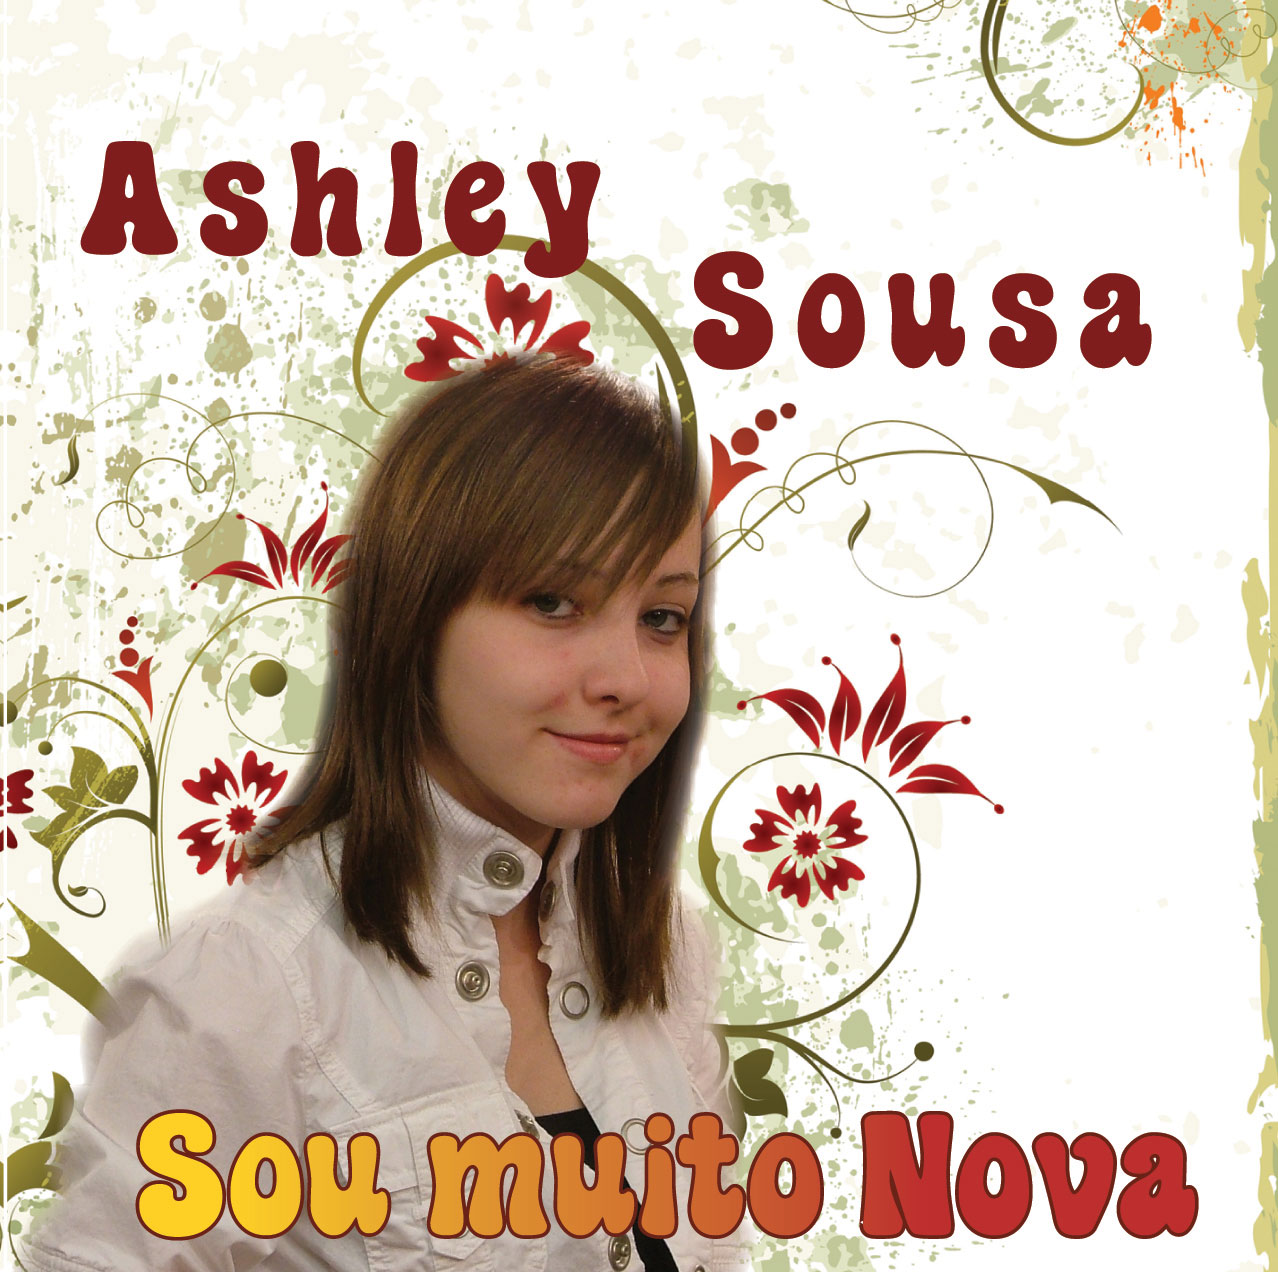 Ashley Sousa